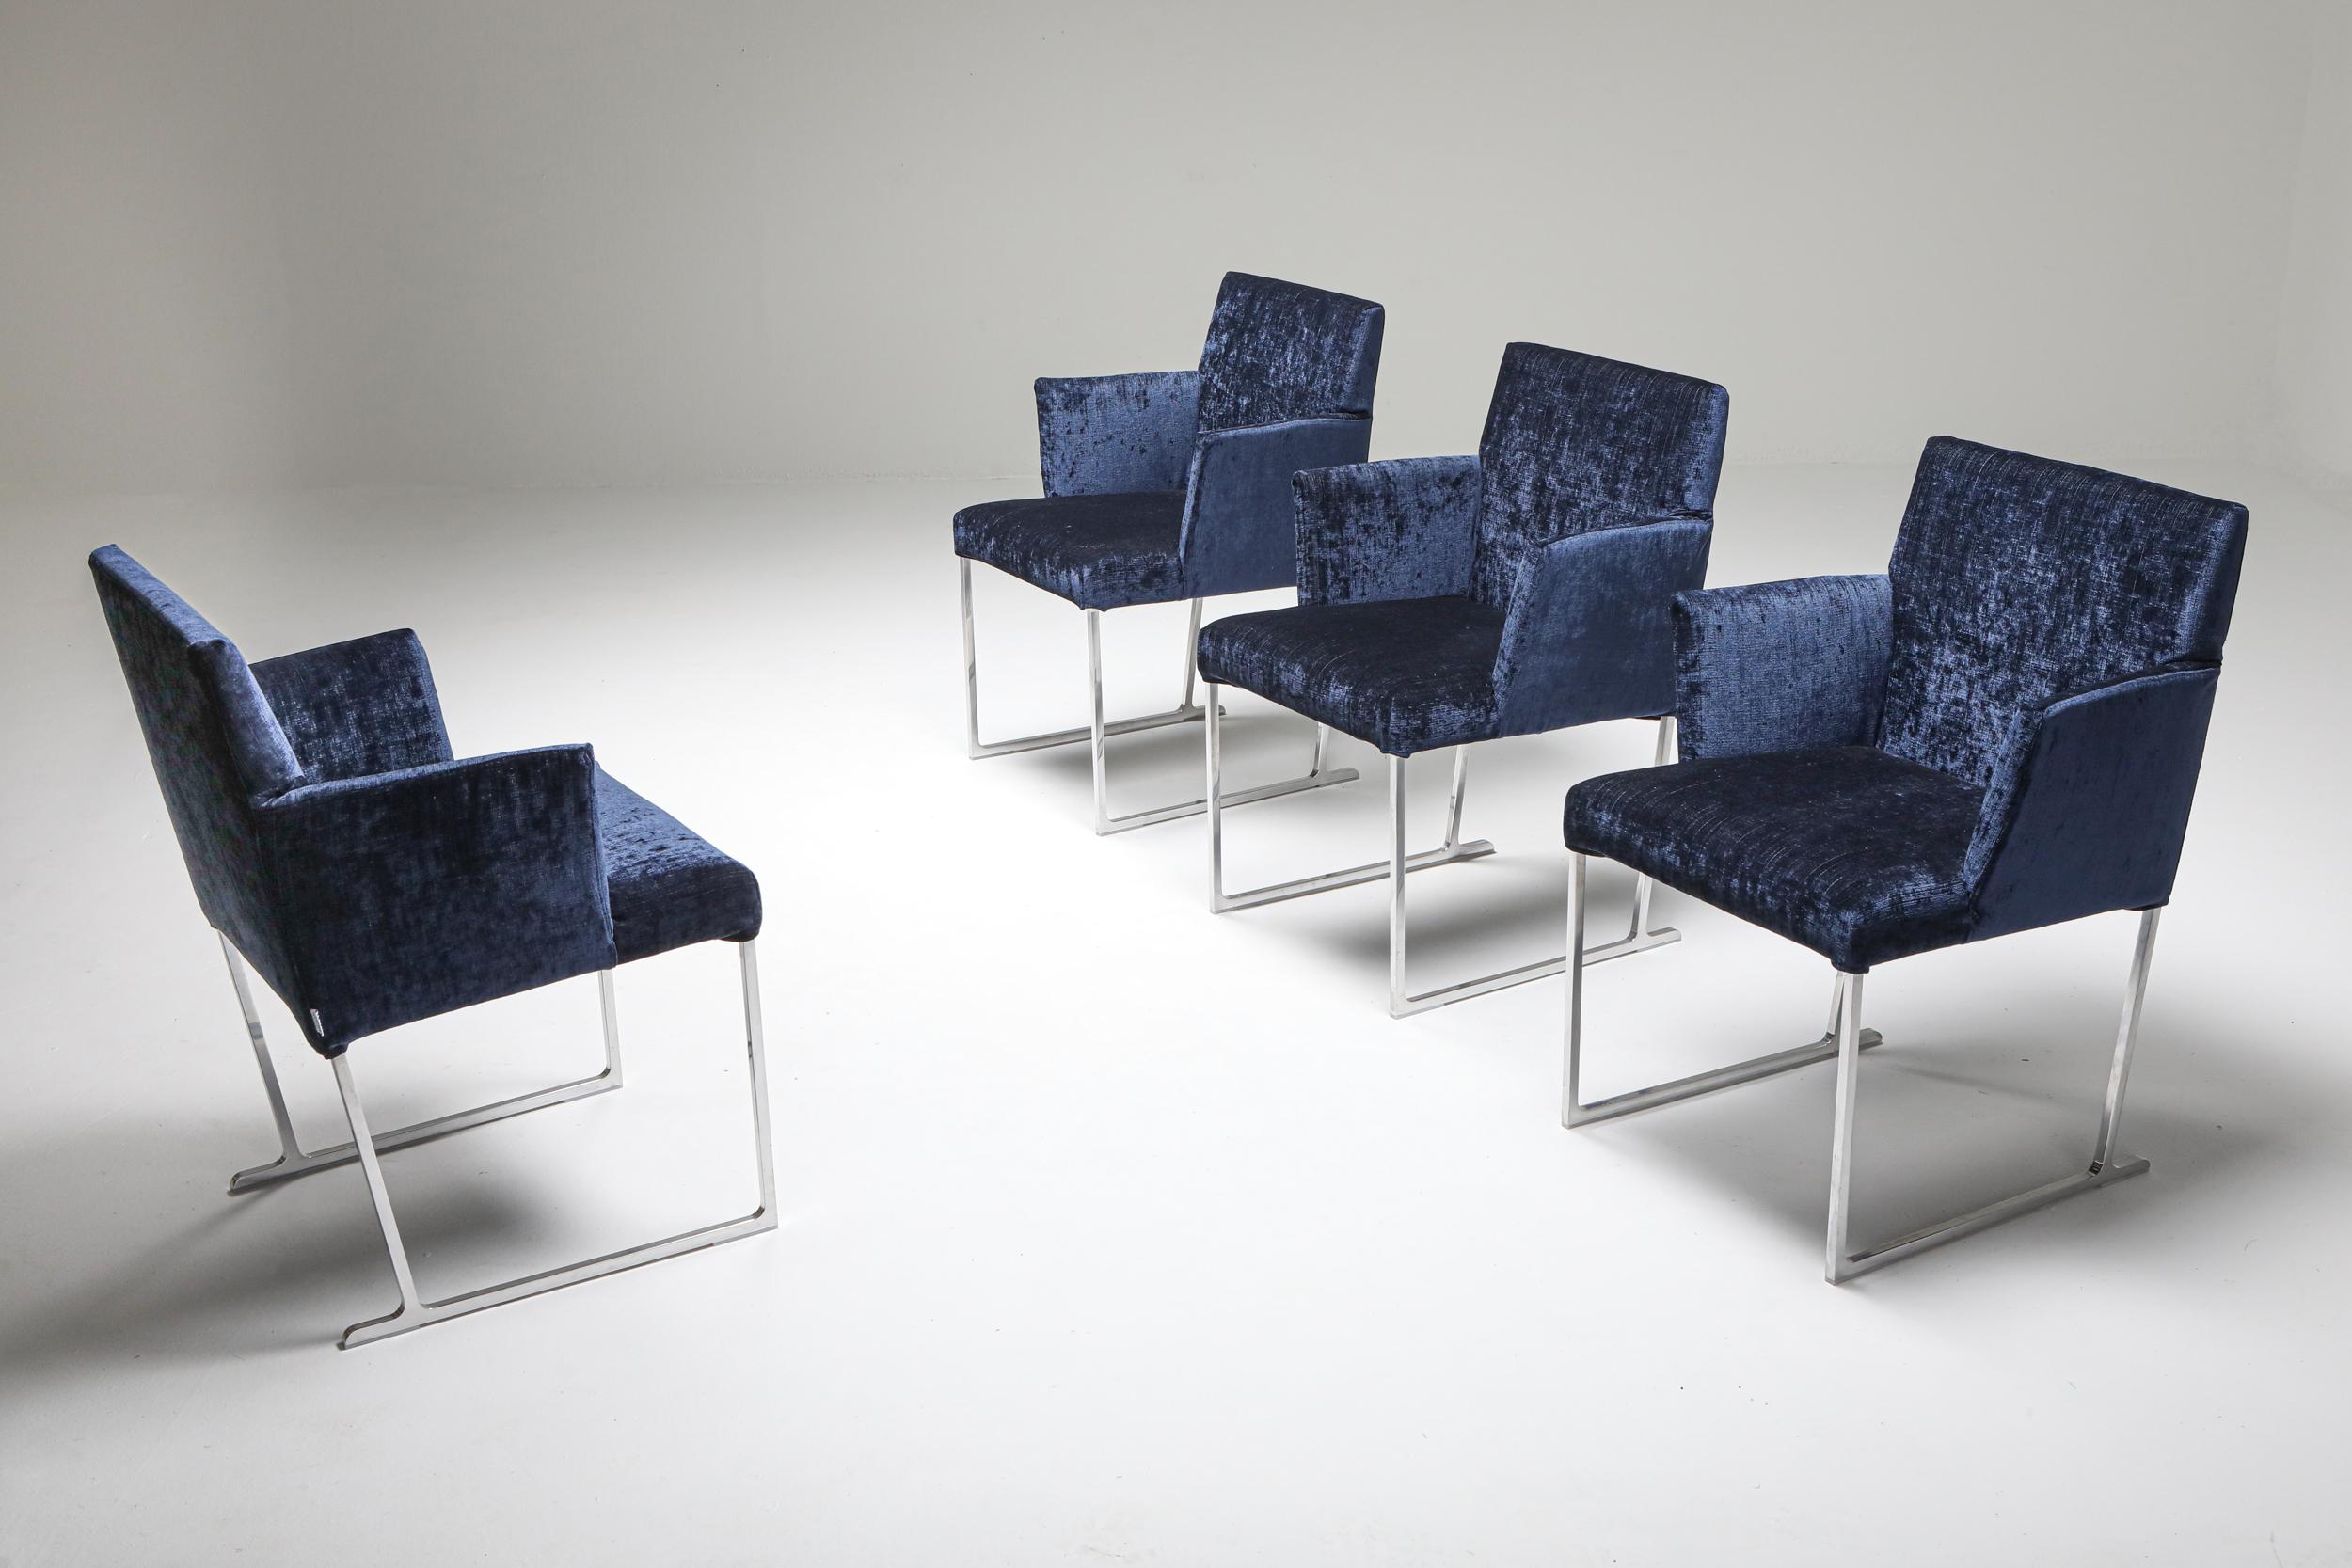 Italian Solo Chairs by Antonio Citterio for Maxalto